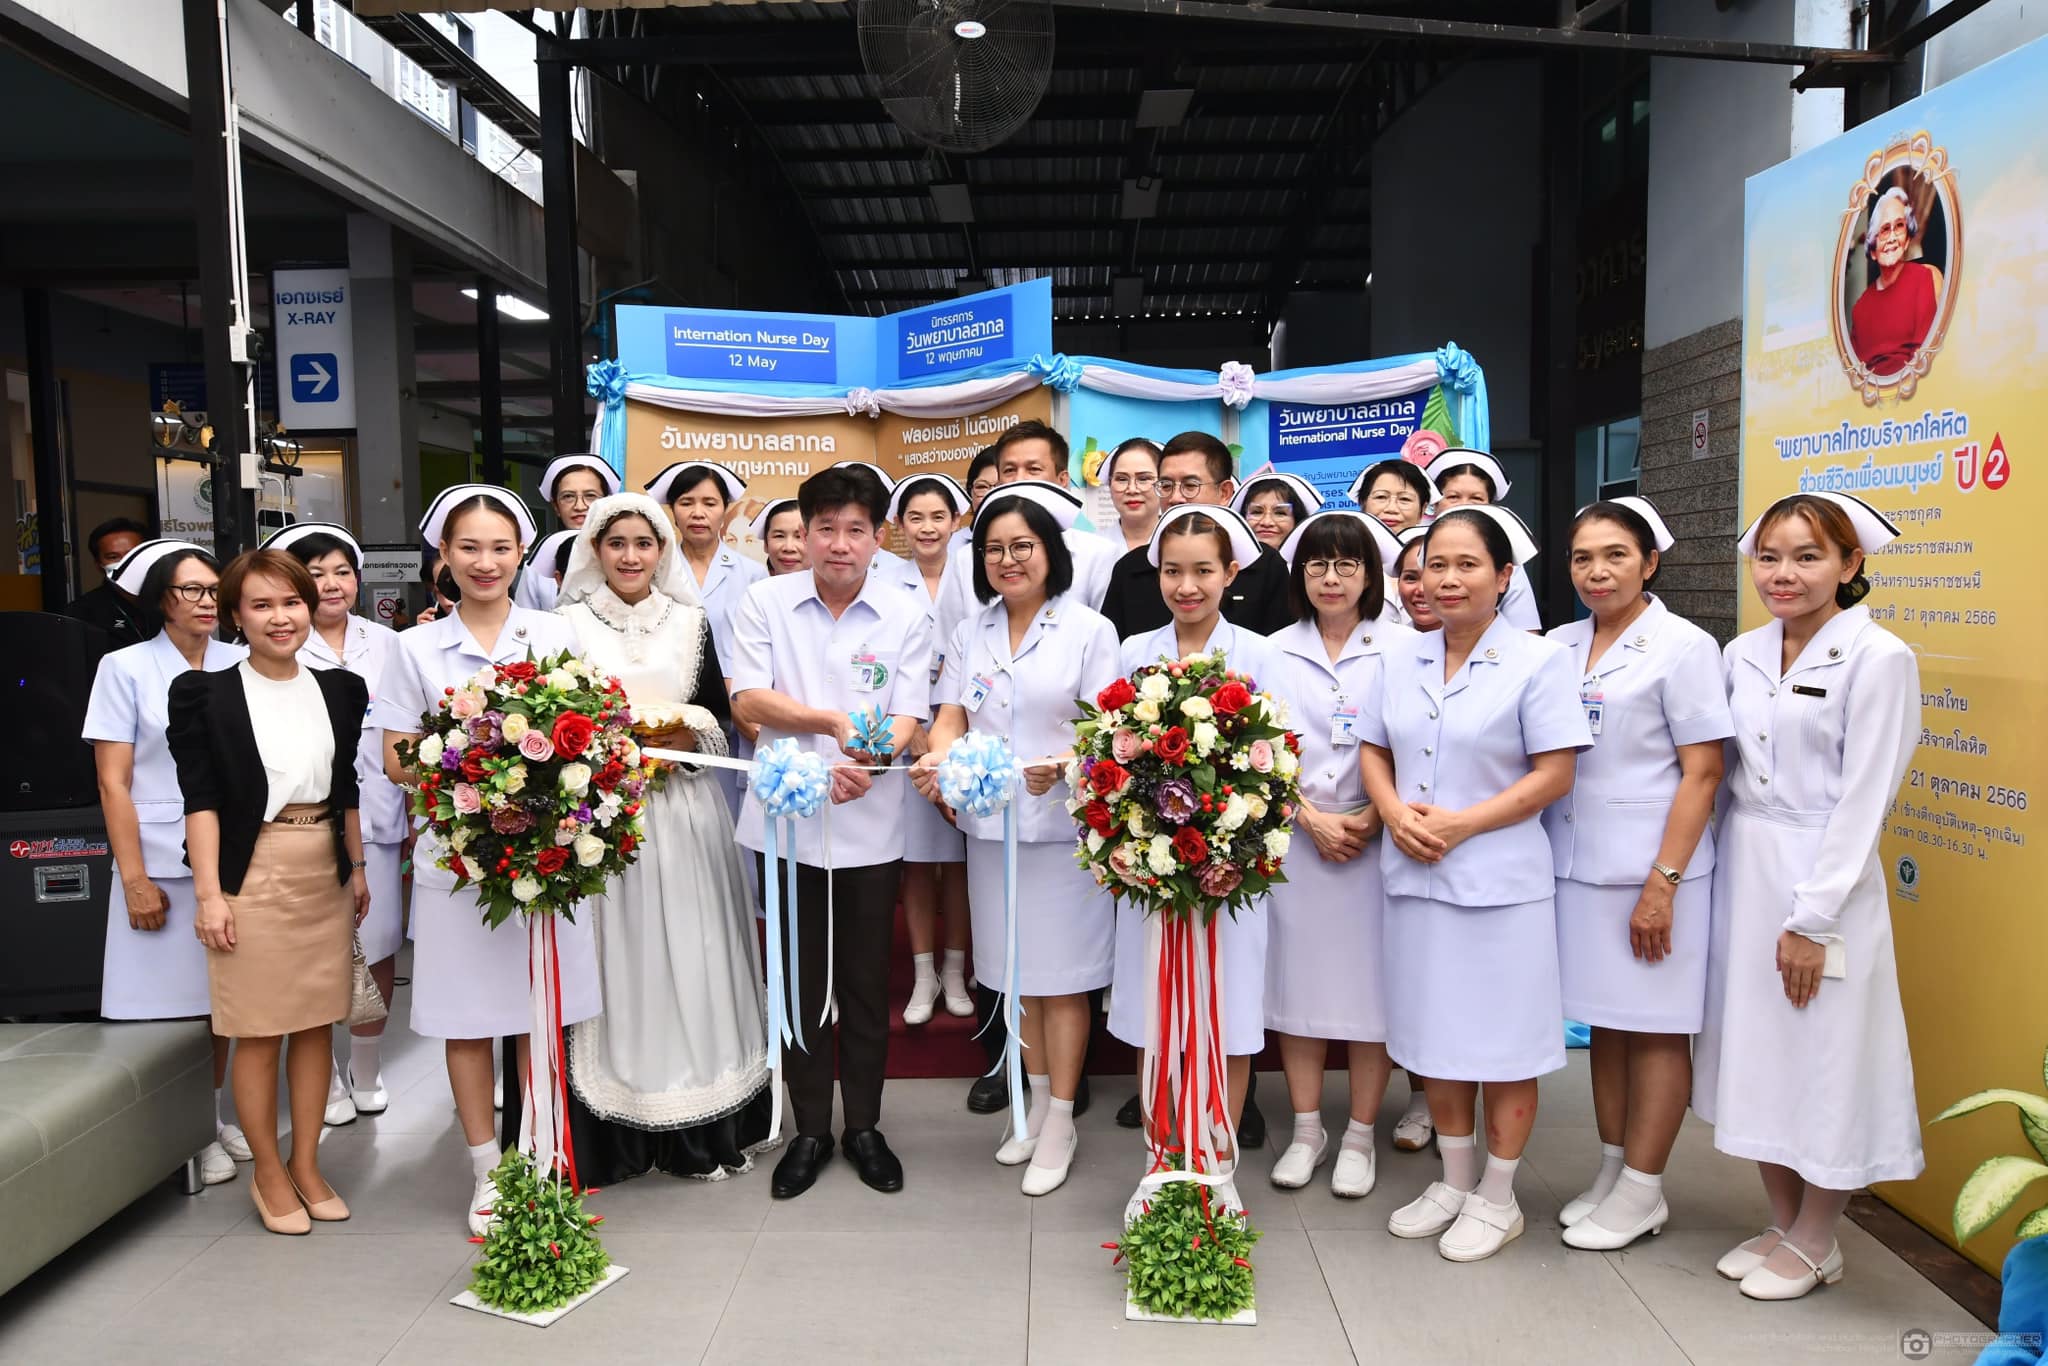 นายแพทย์อนุกูล ไทยถานันดร์ ผู้อำนวยการโรงพยาบาลราชบุรี เป็นประธานในการเปิดงานวันพยาบาลสากล (International Nurses Day) ประจำปี​ พ.ศ. 2566            ภายใต้ Theme “Our Nurse Our Future : พยาบาลของเรา อนาคตของพวกเรา”